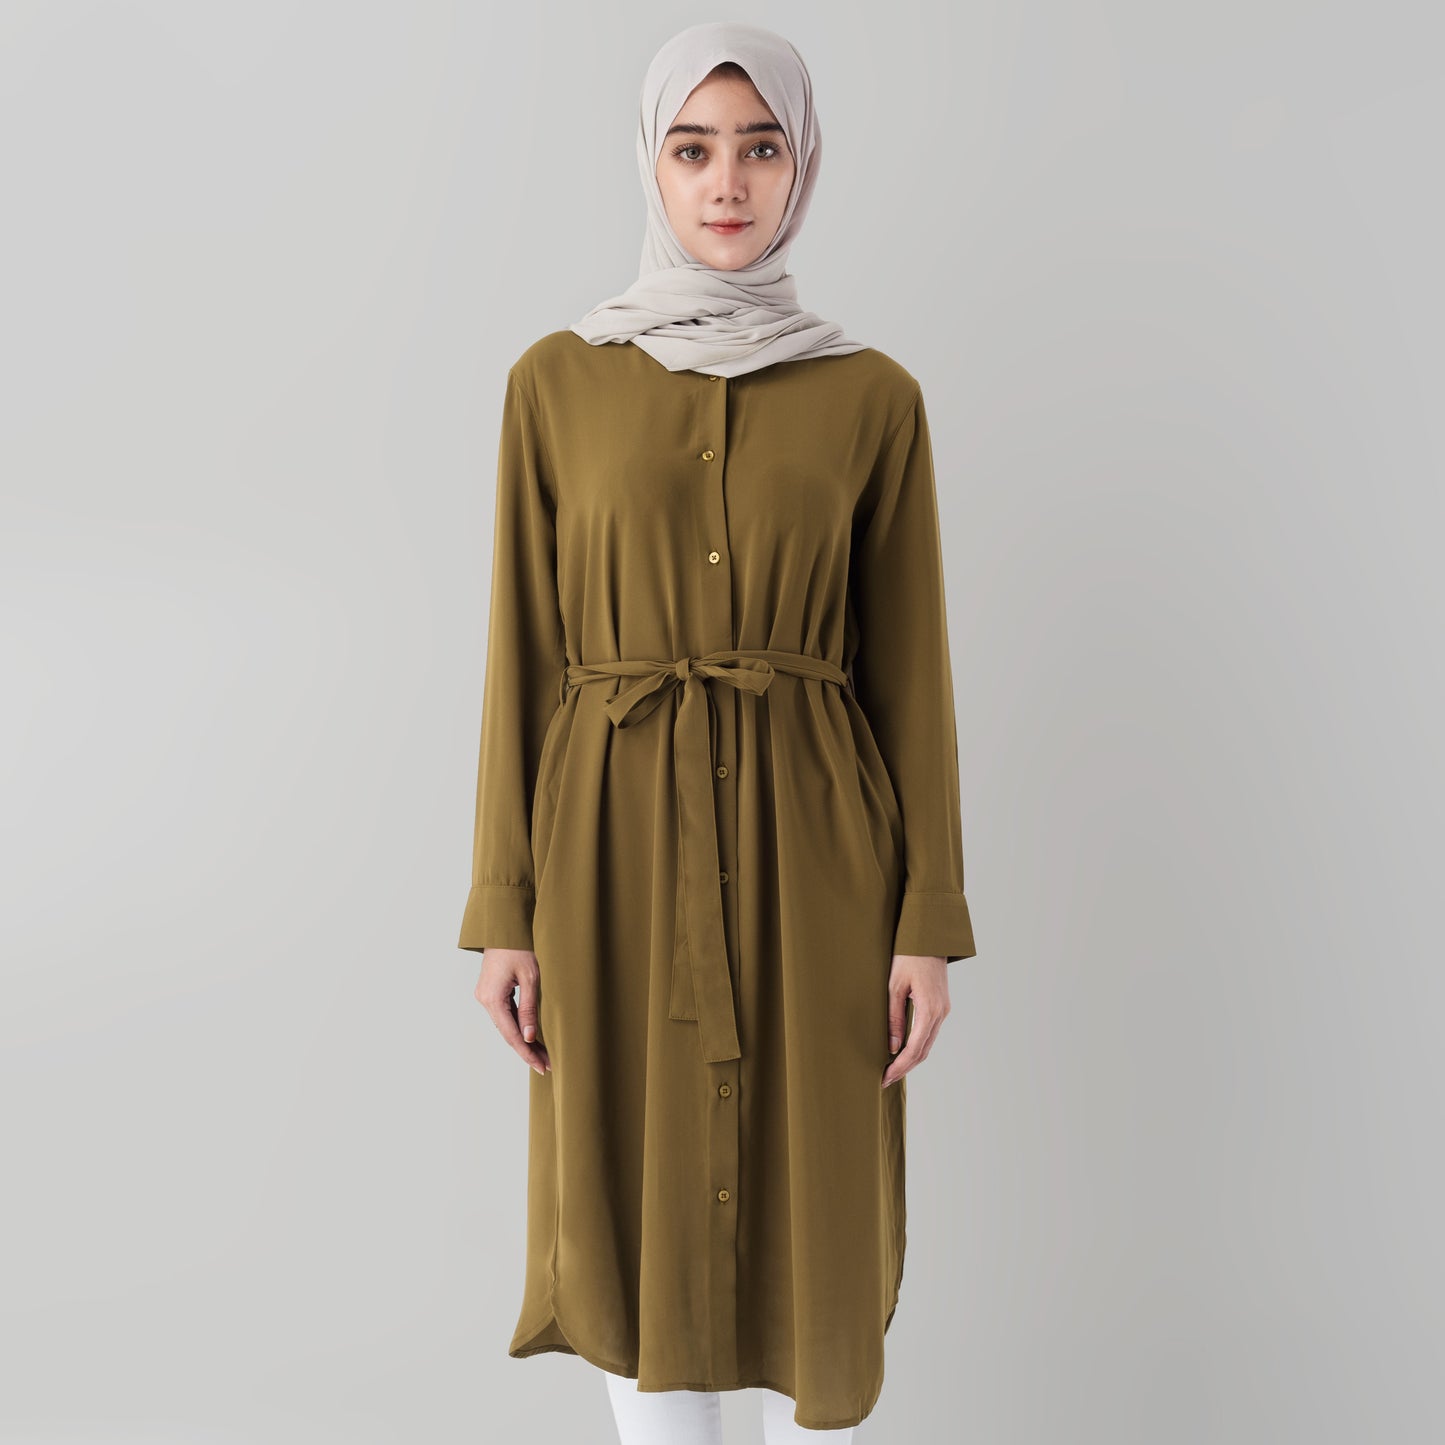 Benhill Yena Dress Tunik Wanita Mustard 874-39A0B